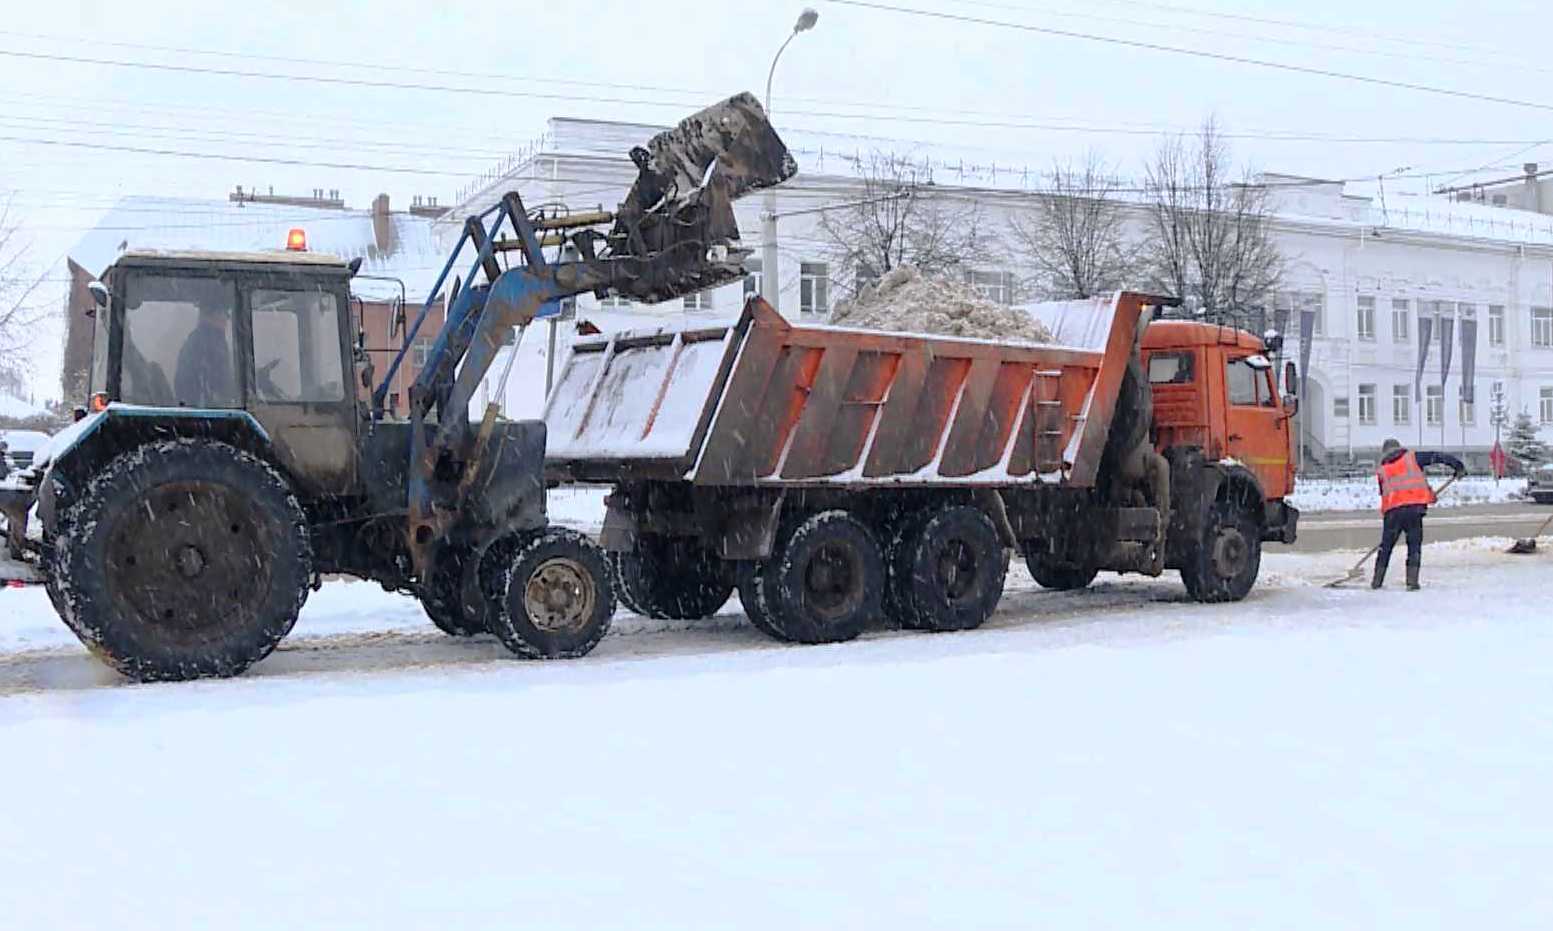 Убирать снег с костромских улиц вышло 40 единиц техники